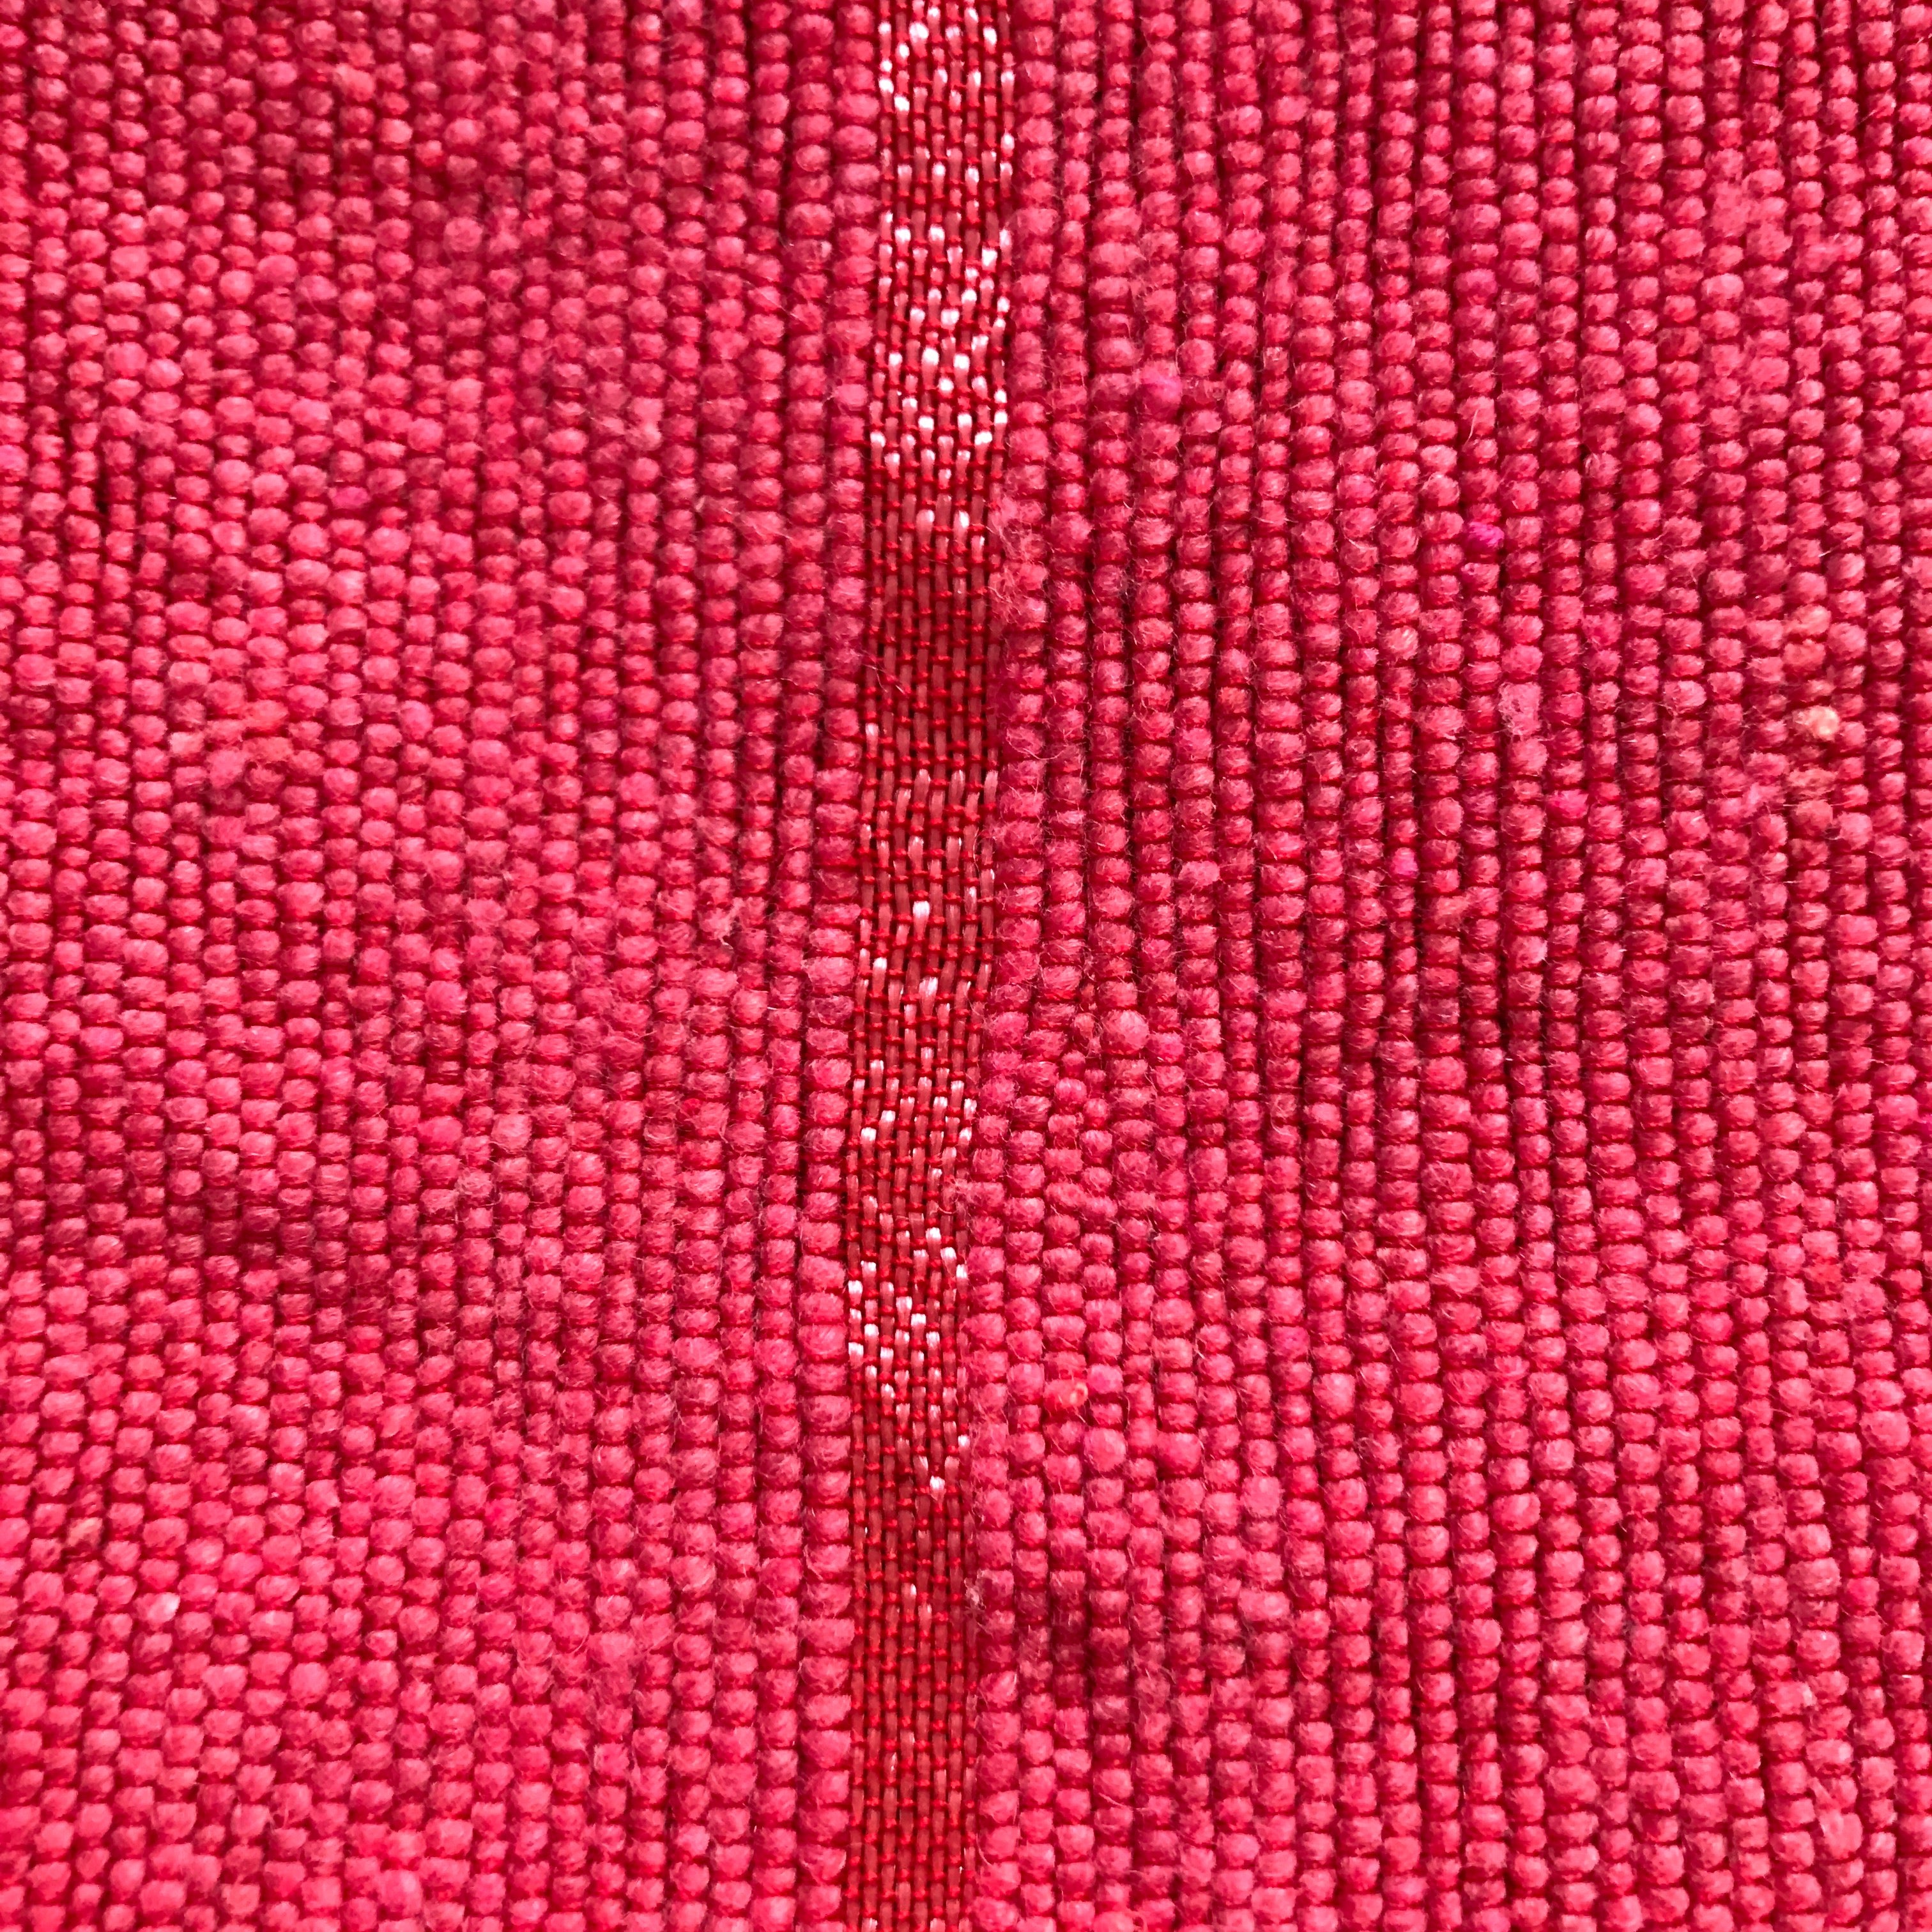 Red & Tan Pom Pom Blanket